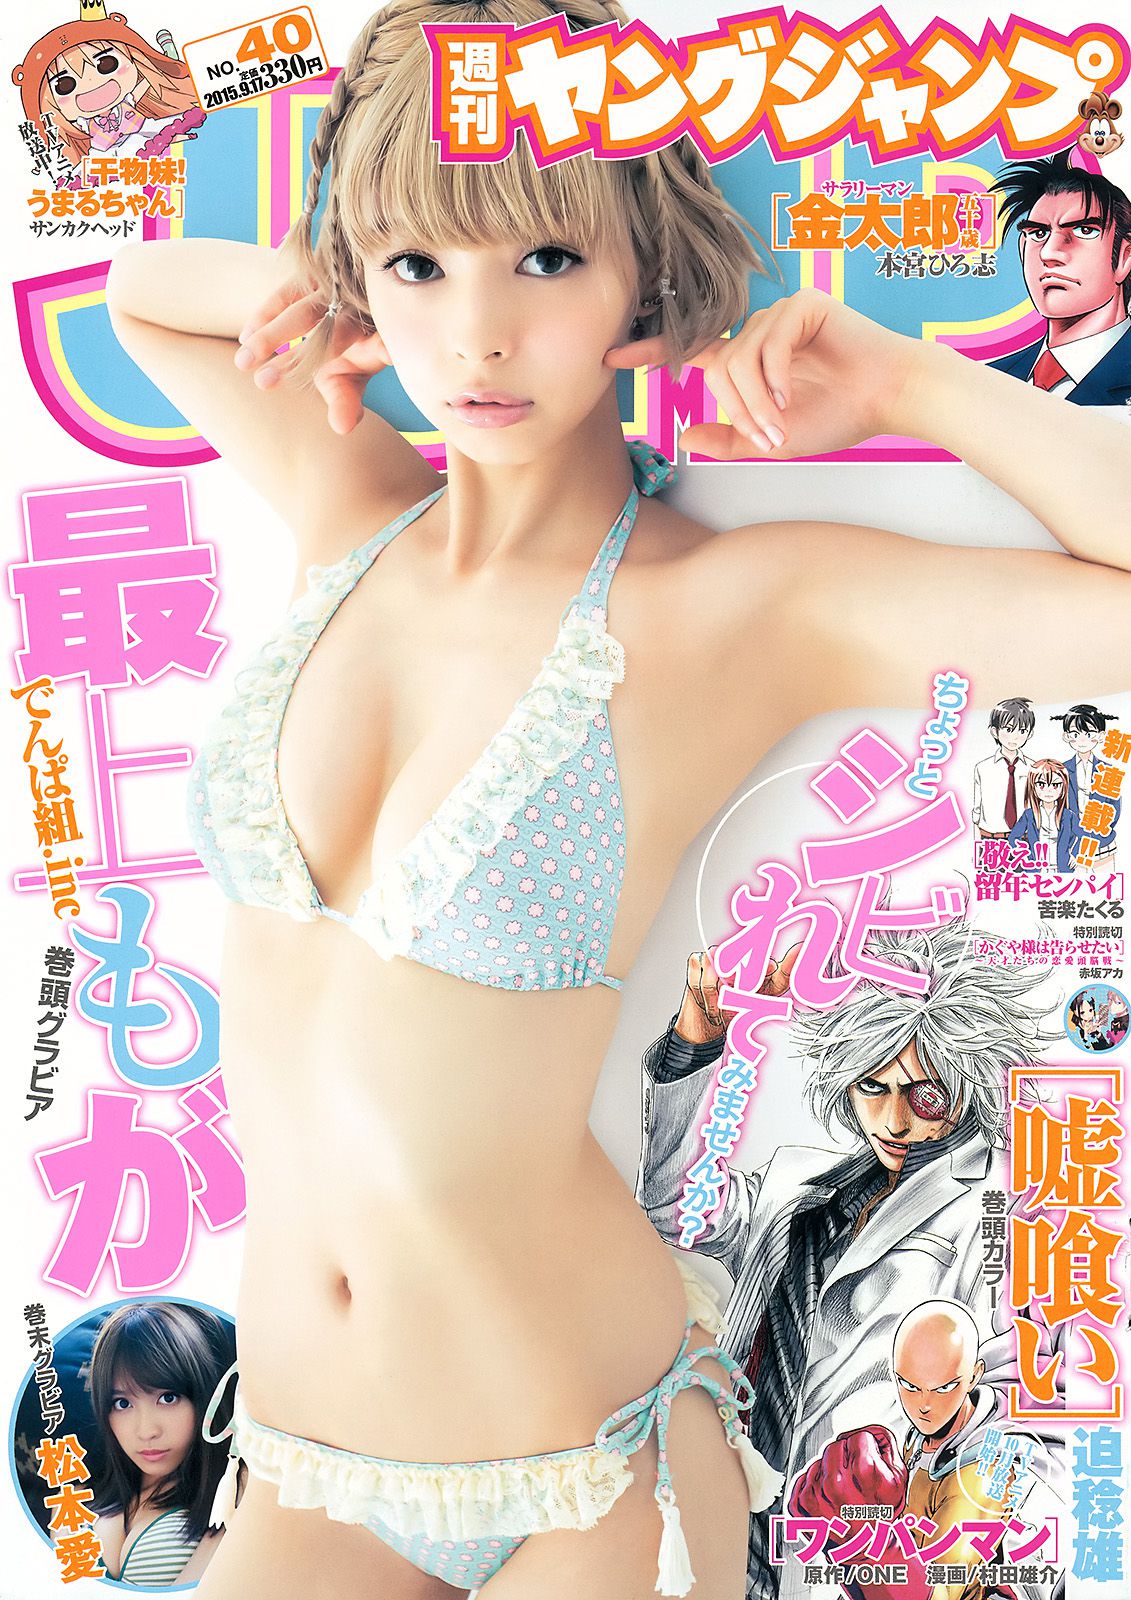 最上もが 松本愛 [Weekly Young Jump] 2015年No.40 写真杂志西方37大但人文艺术